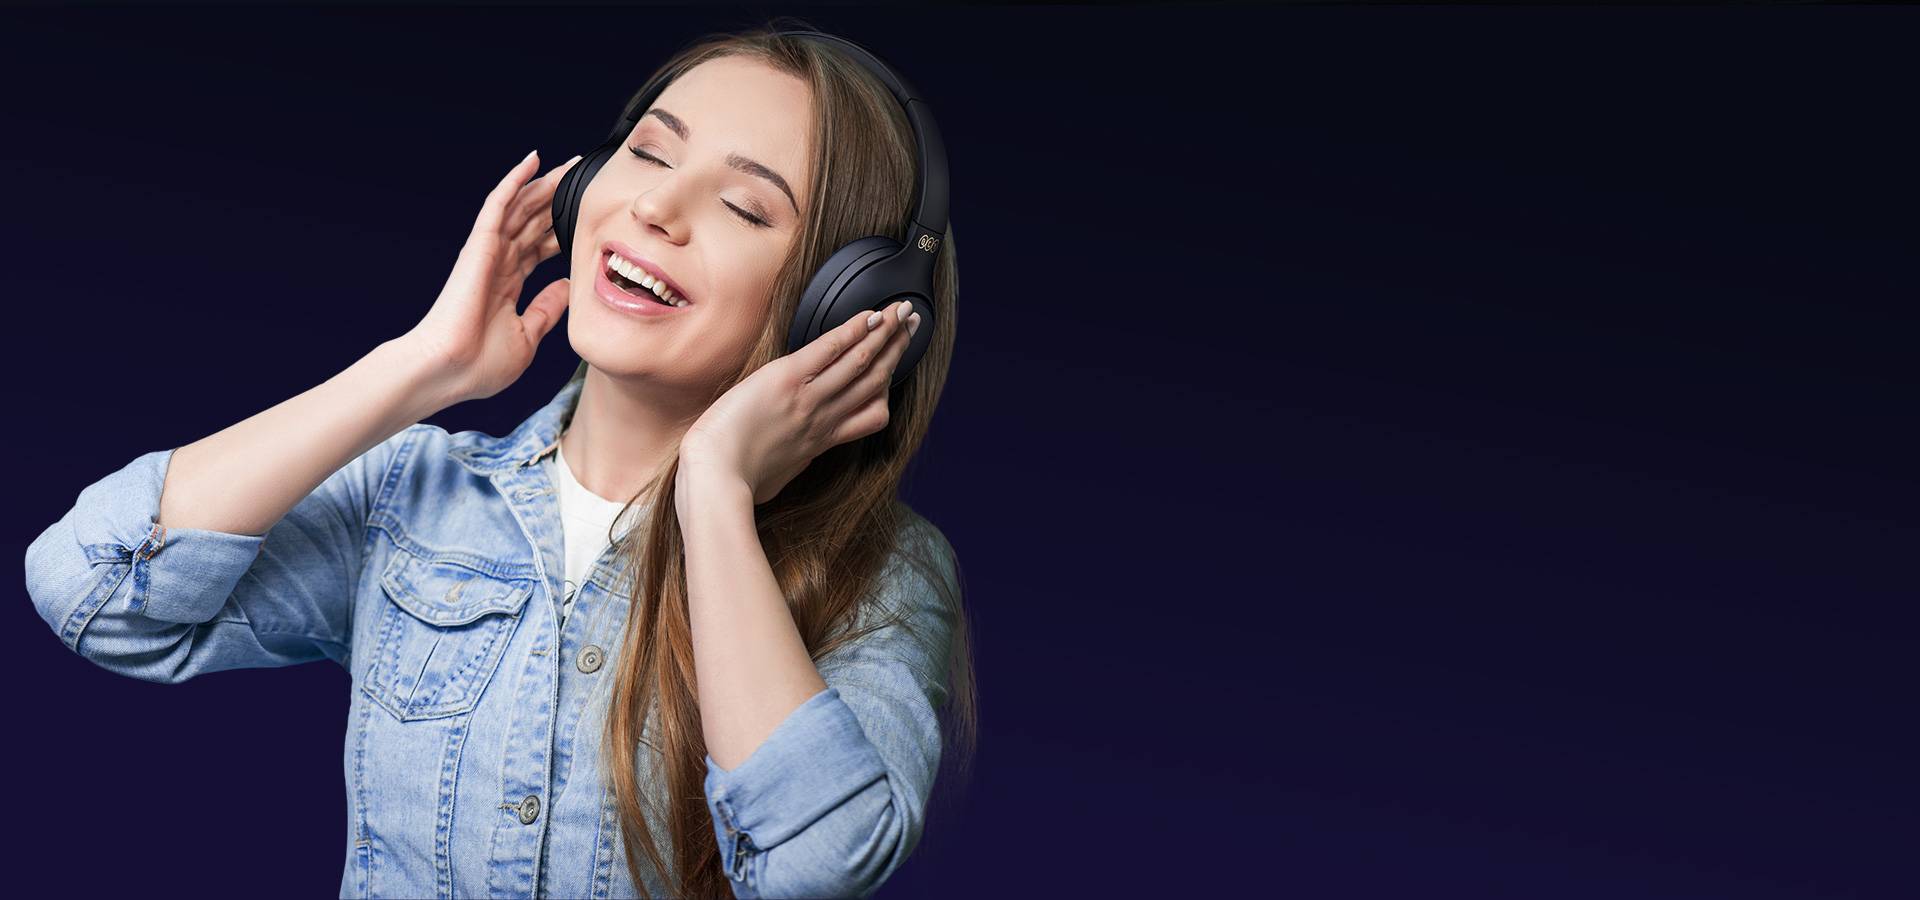 🎧✨ ¡Explora nuevos horizontes musicales con QCY H3! Con la última  tecnología Bluetooth 5.4 y Hi-res audio, vive cada detalle de tu…